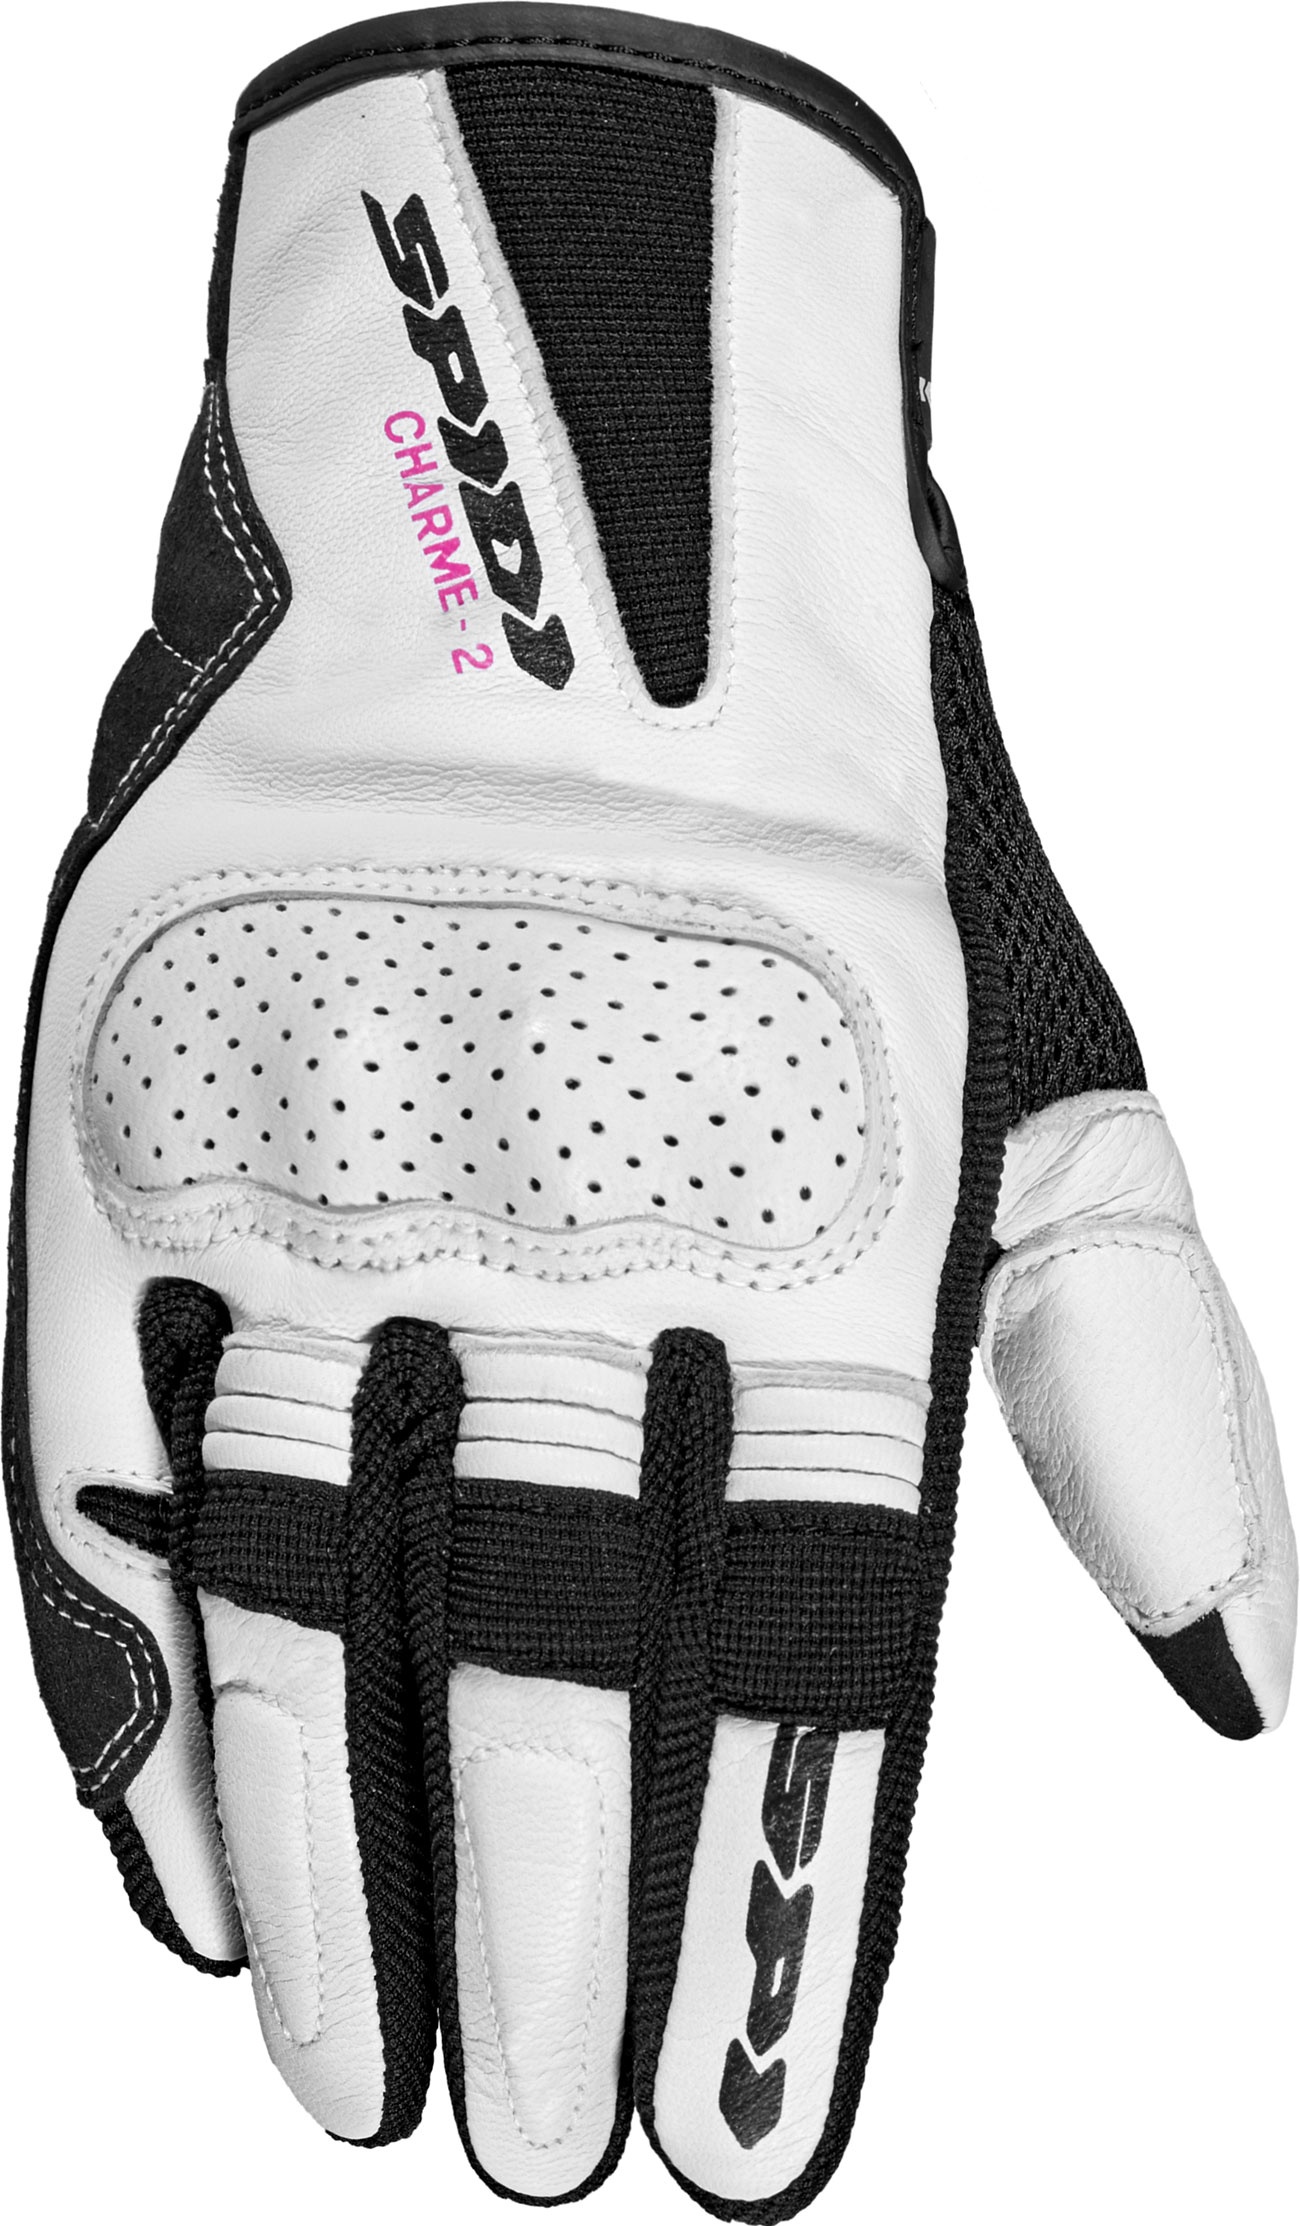 Spidi Charme 2, gants femmes - Noir/Blanc - S